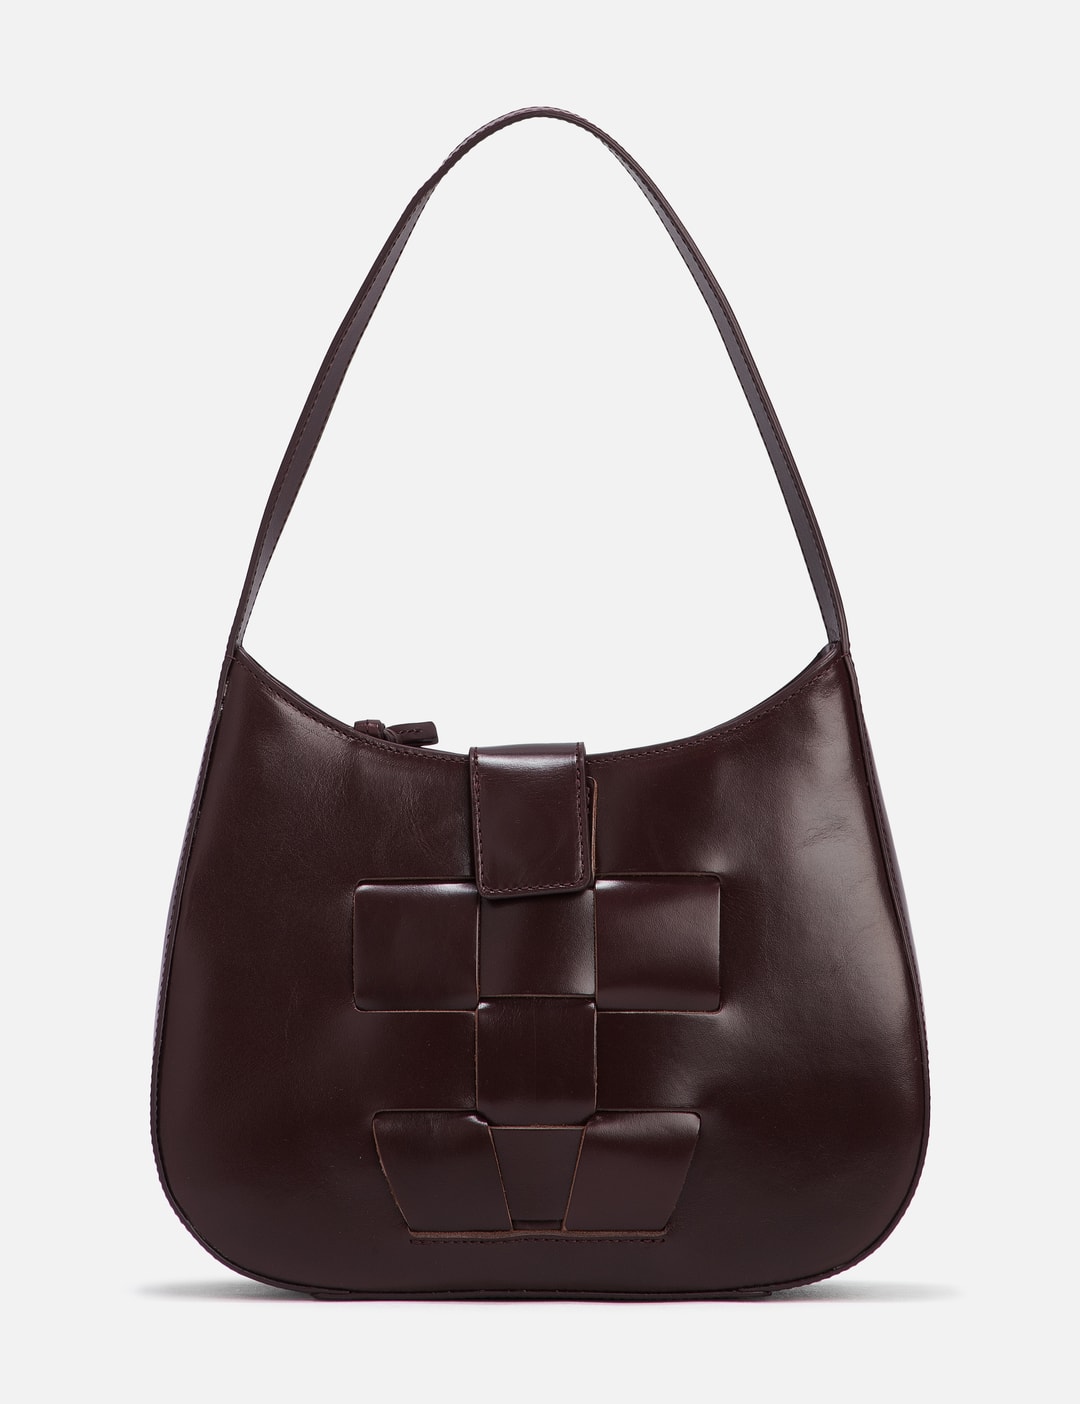 Brown Bauza woven-leather shoulder bag, Hereu